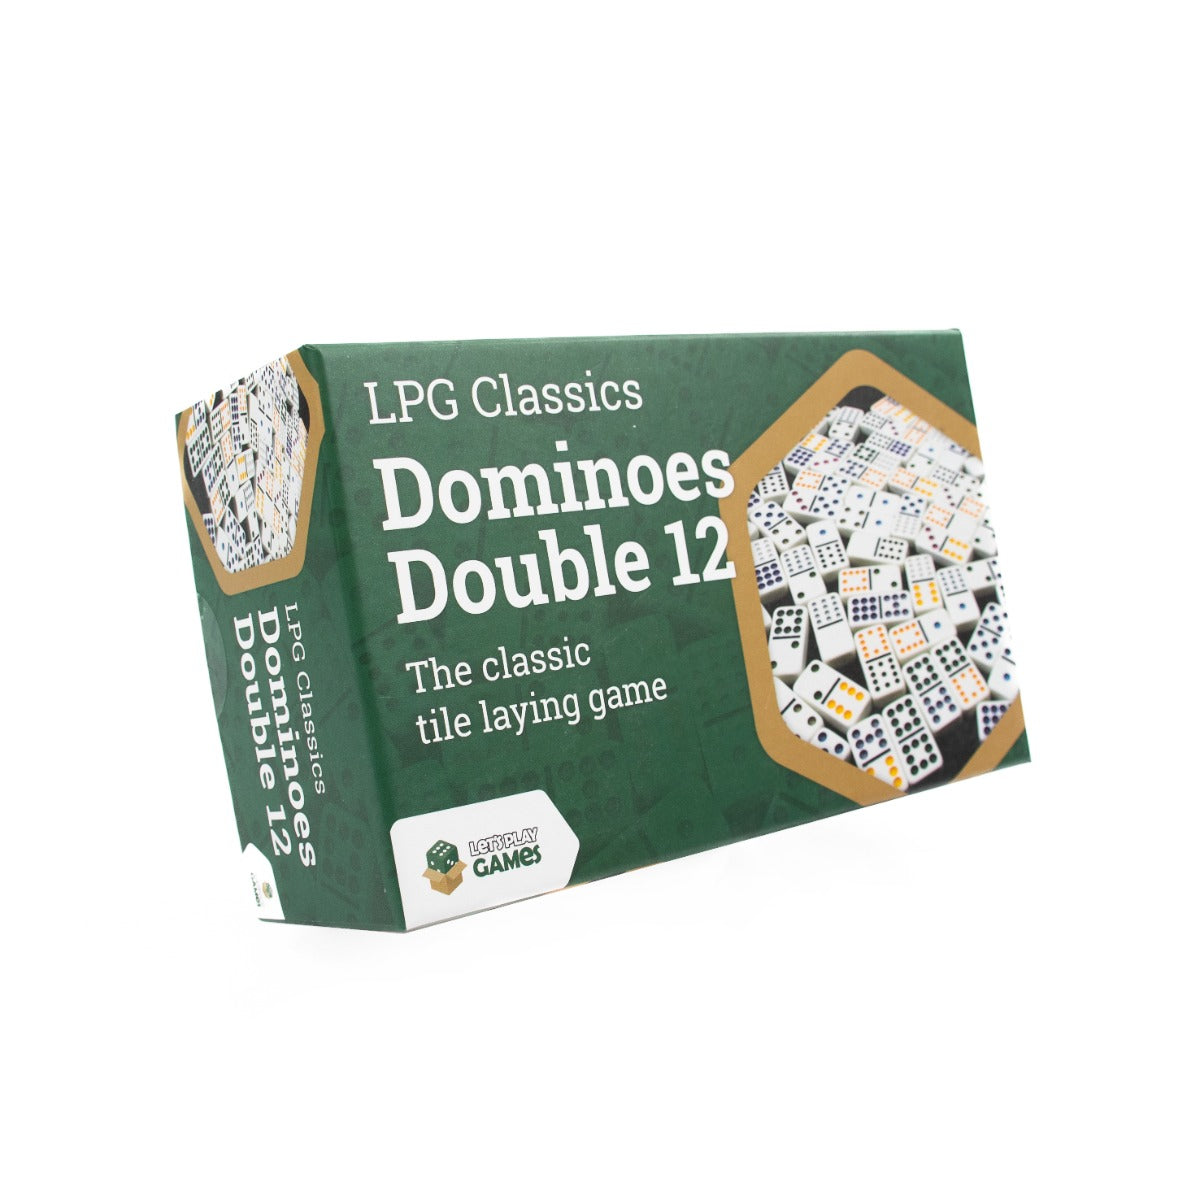 LPG Dominoes Double 12